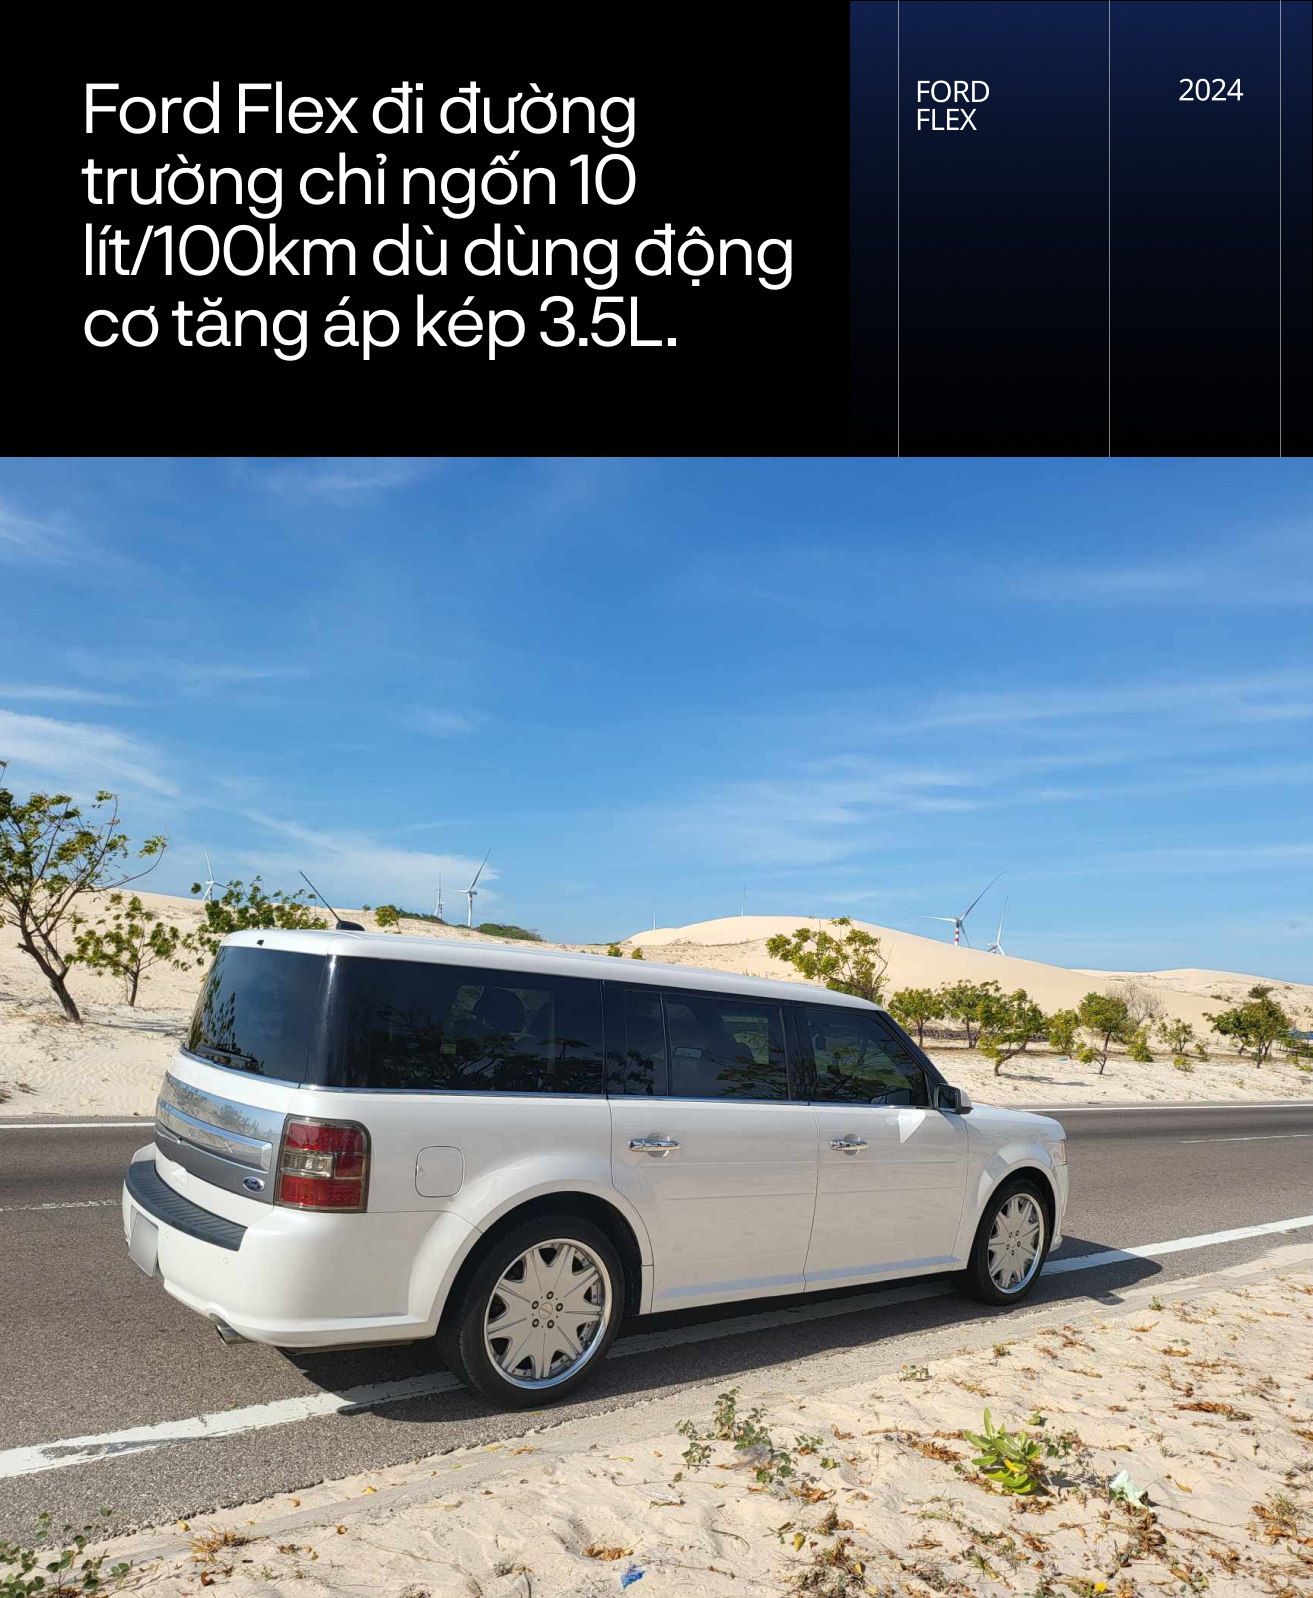 Chủ xe Ford Flex hàng hiếm tại Việt Nam: 'Đáng chơi vì nhiều phụ tùng dùng chung với Explorer, đi 100 km chỉ tốn 10 lít xăng' - Ảnh 2.